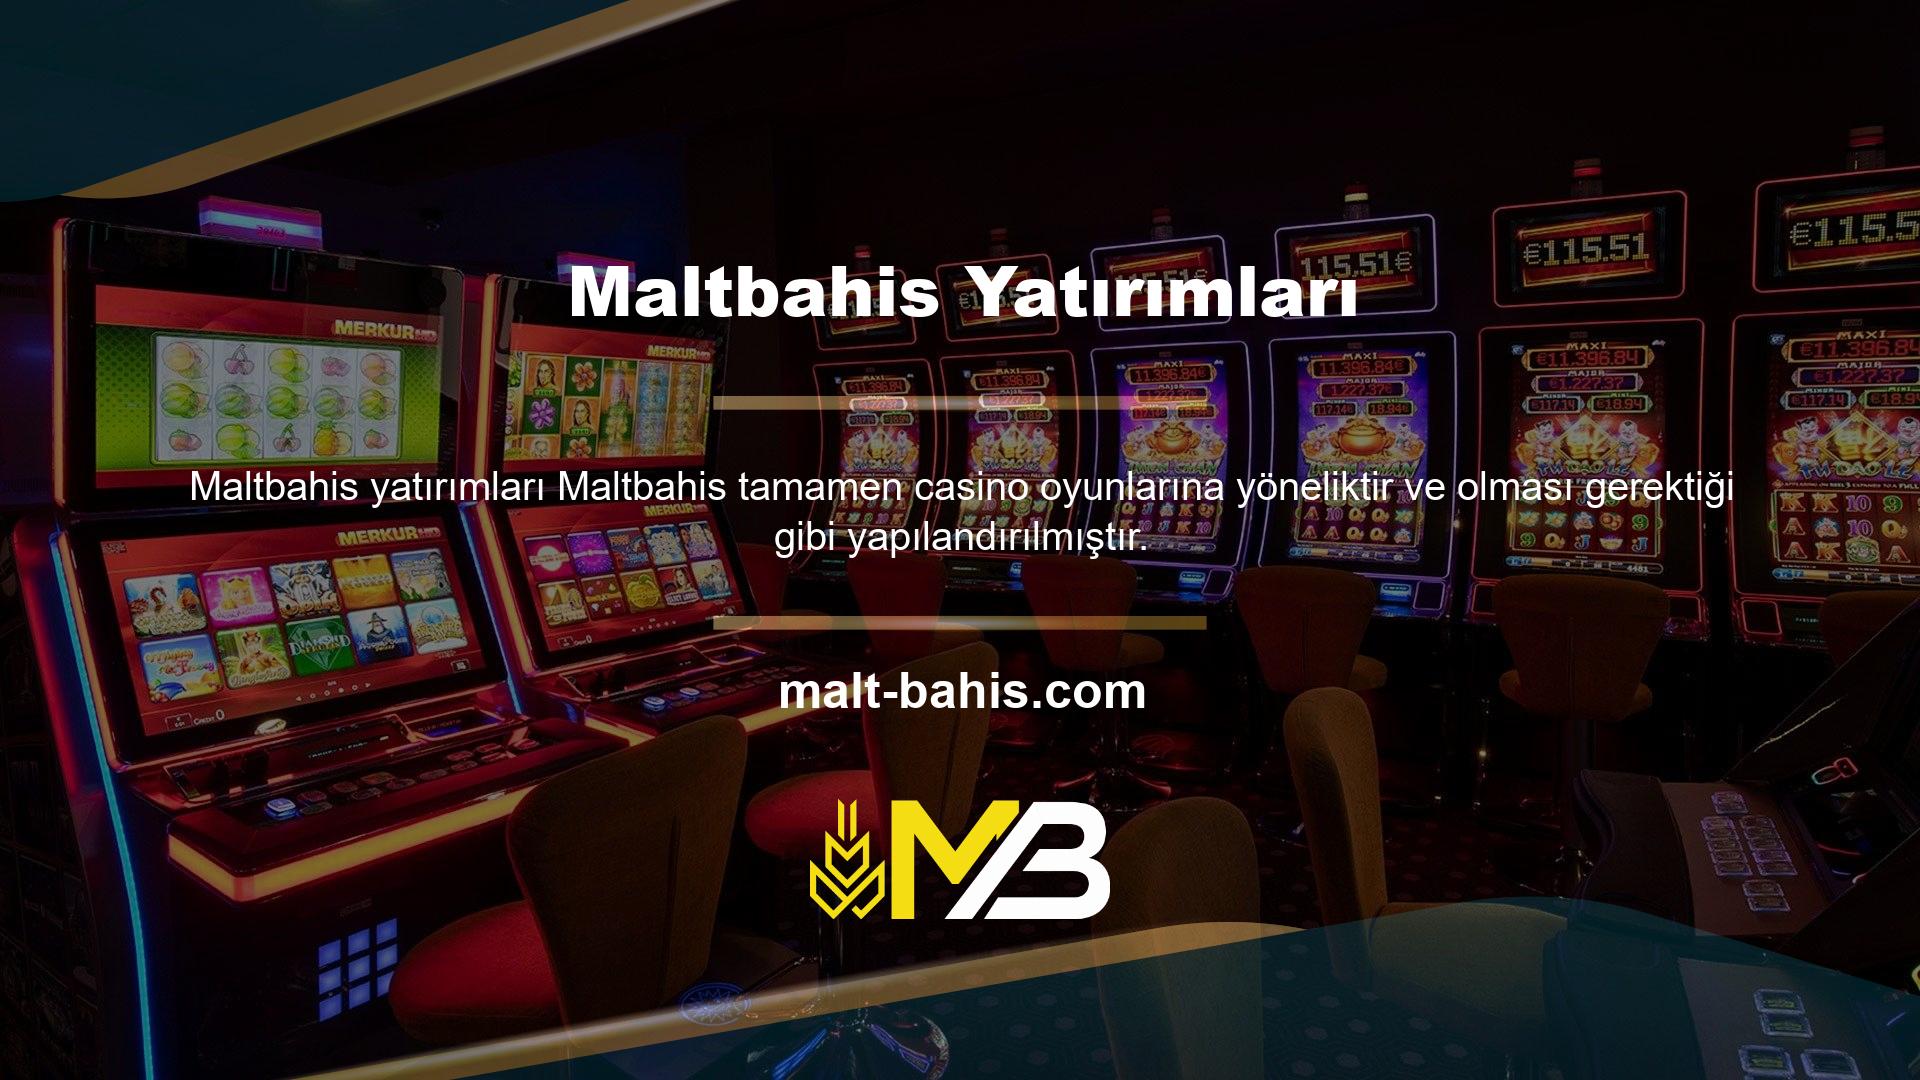 Onlarca canlı oyunun yer aldığı bu site, Türkiye'nin en çok oyun sunan casino şirketidir